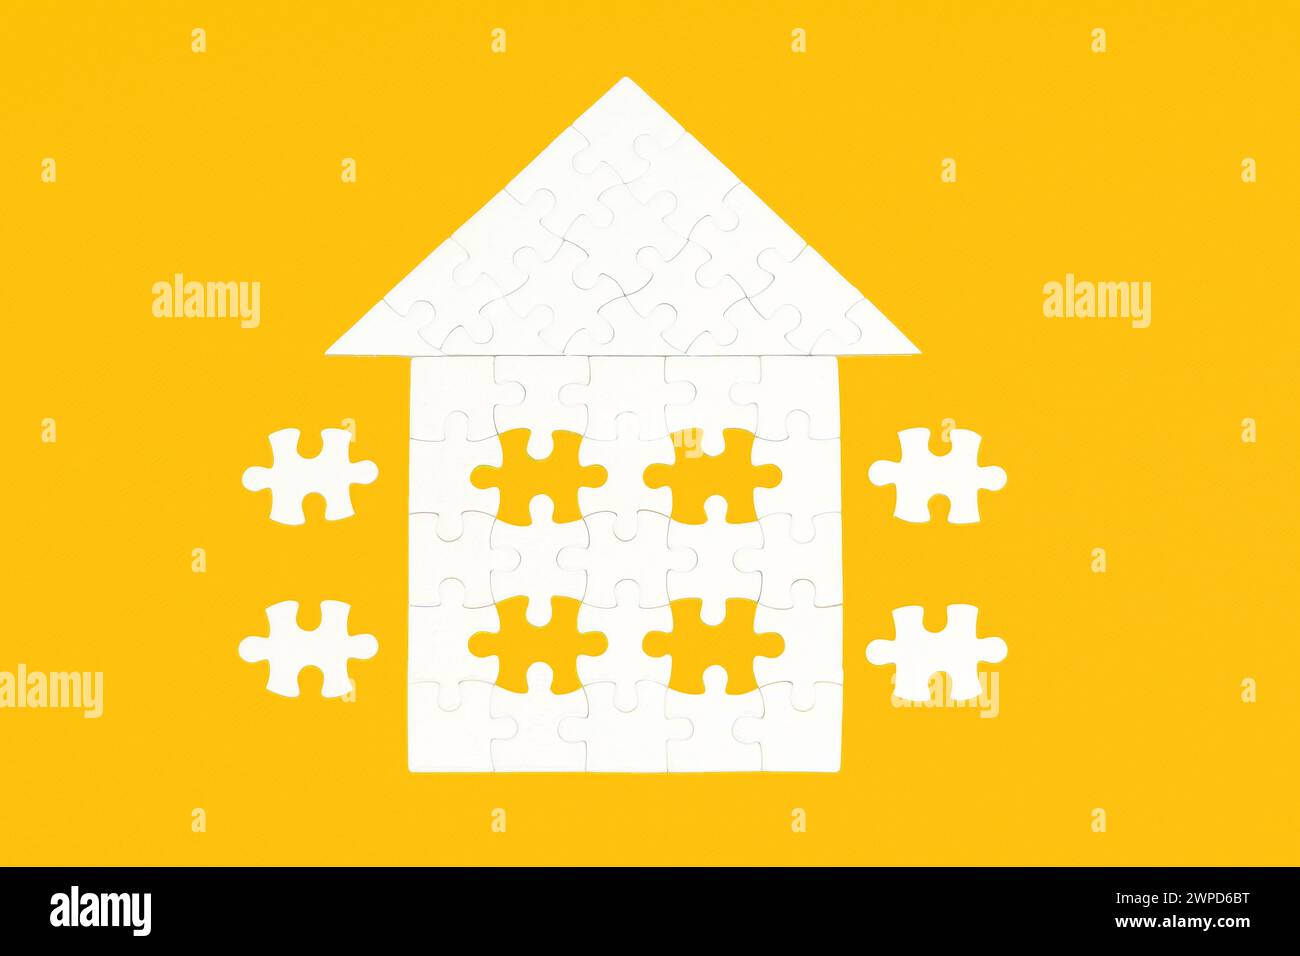 Puzzle bianco a forma di casa sul tetto, posizionato su uno sfondo giallo incontaminato. Alcuni elementi finali sono accantonati. Foto Stock